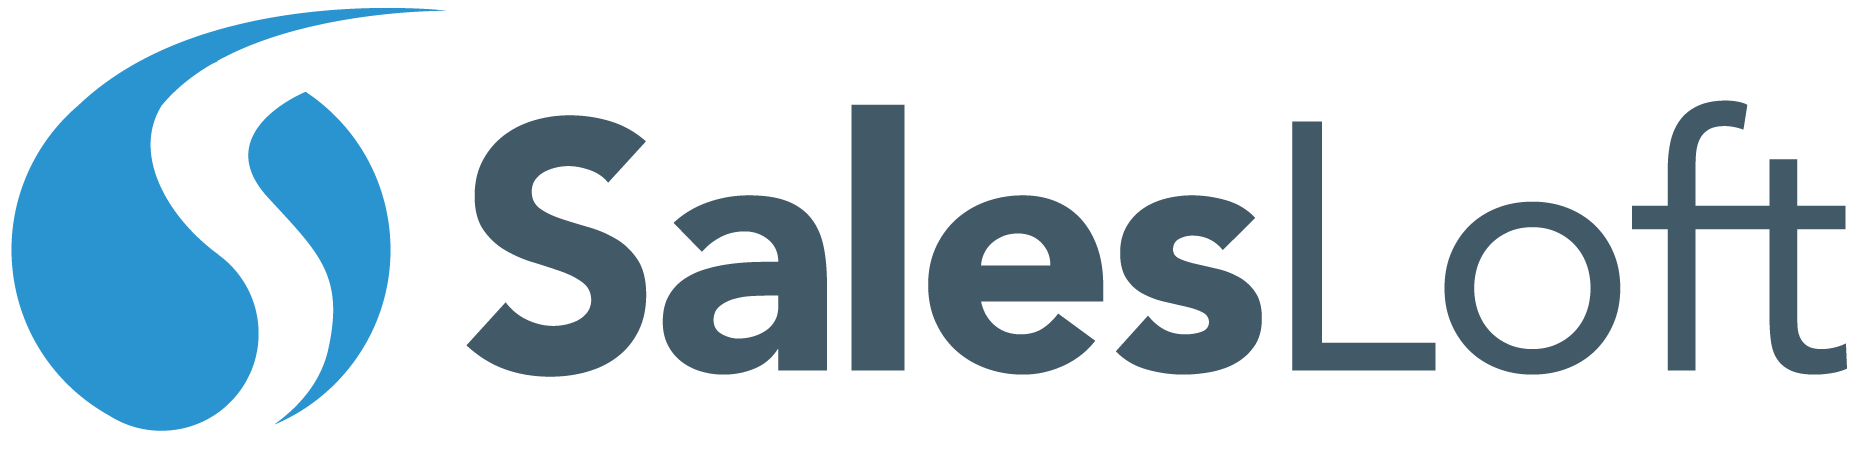 SalesLoft Logo - Career Opportunities